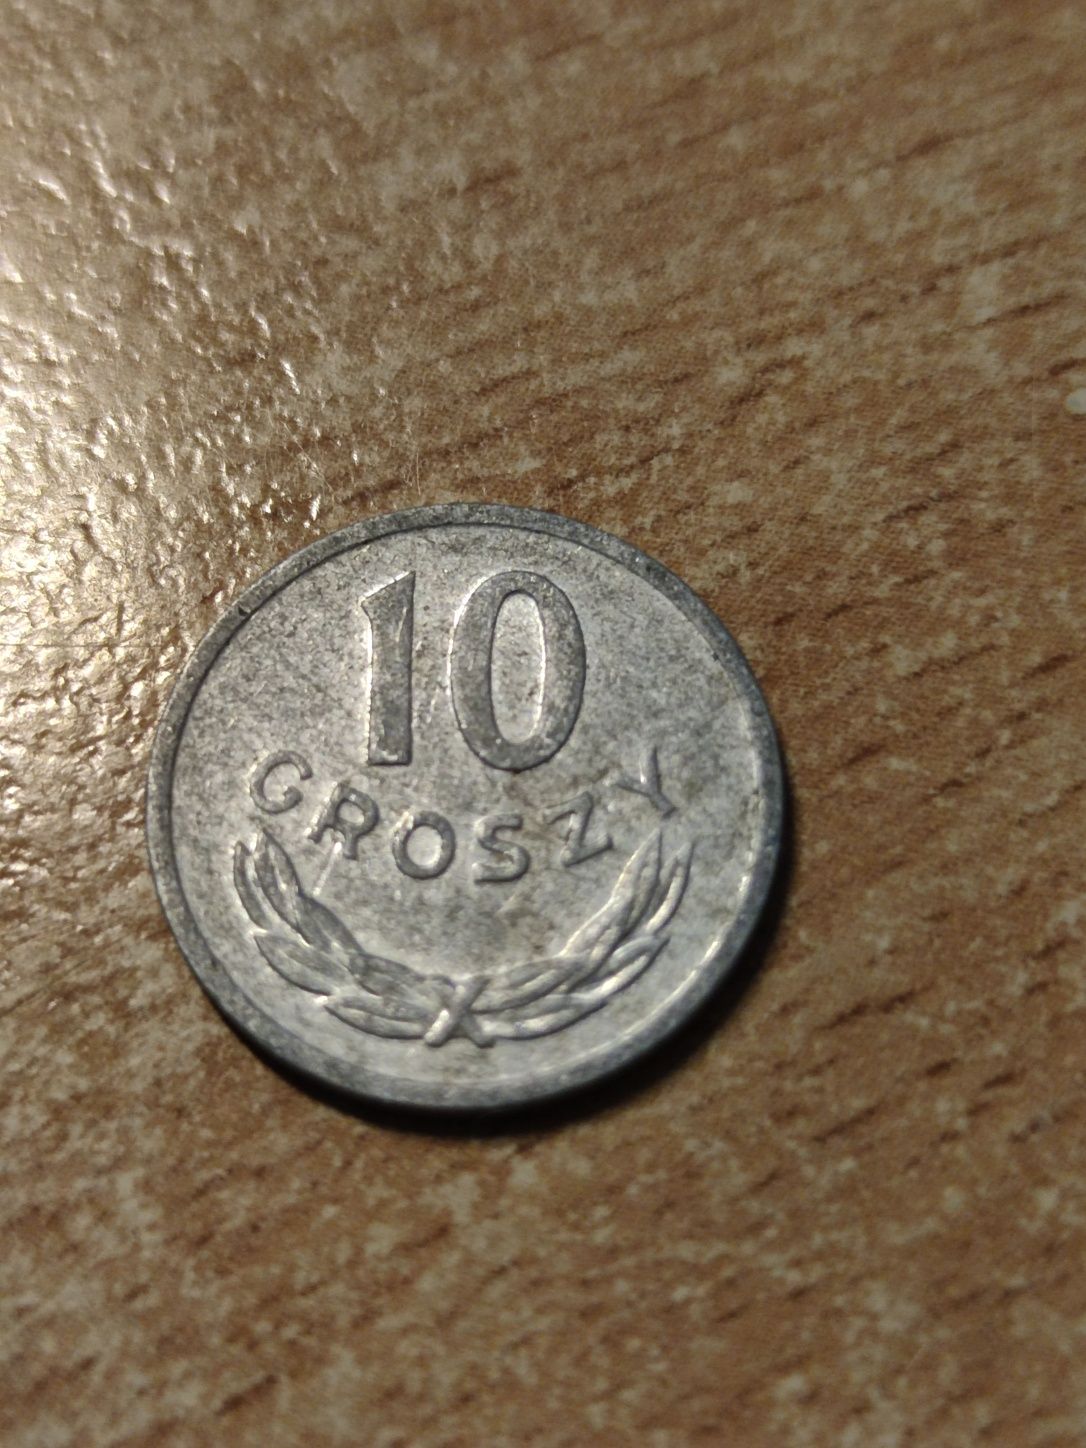 10 groszy z 1981 roku.